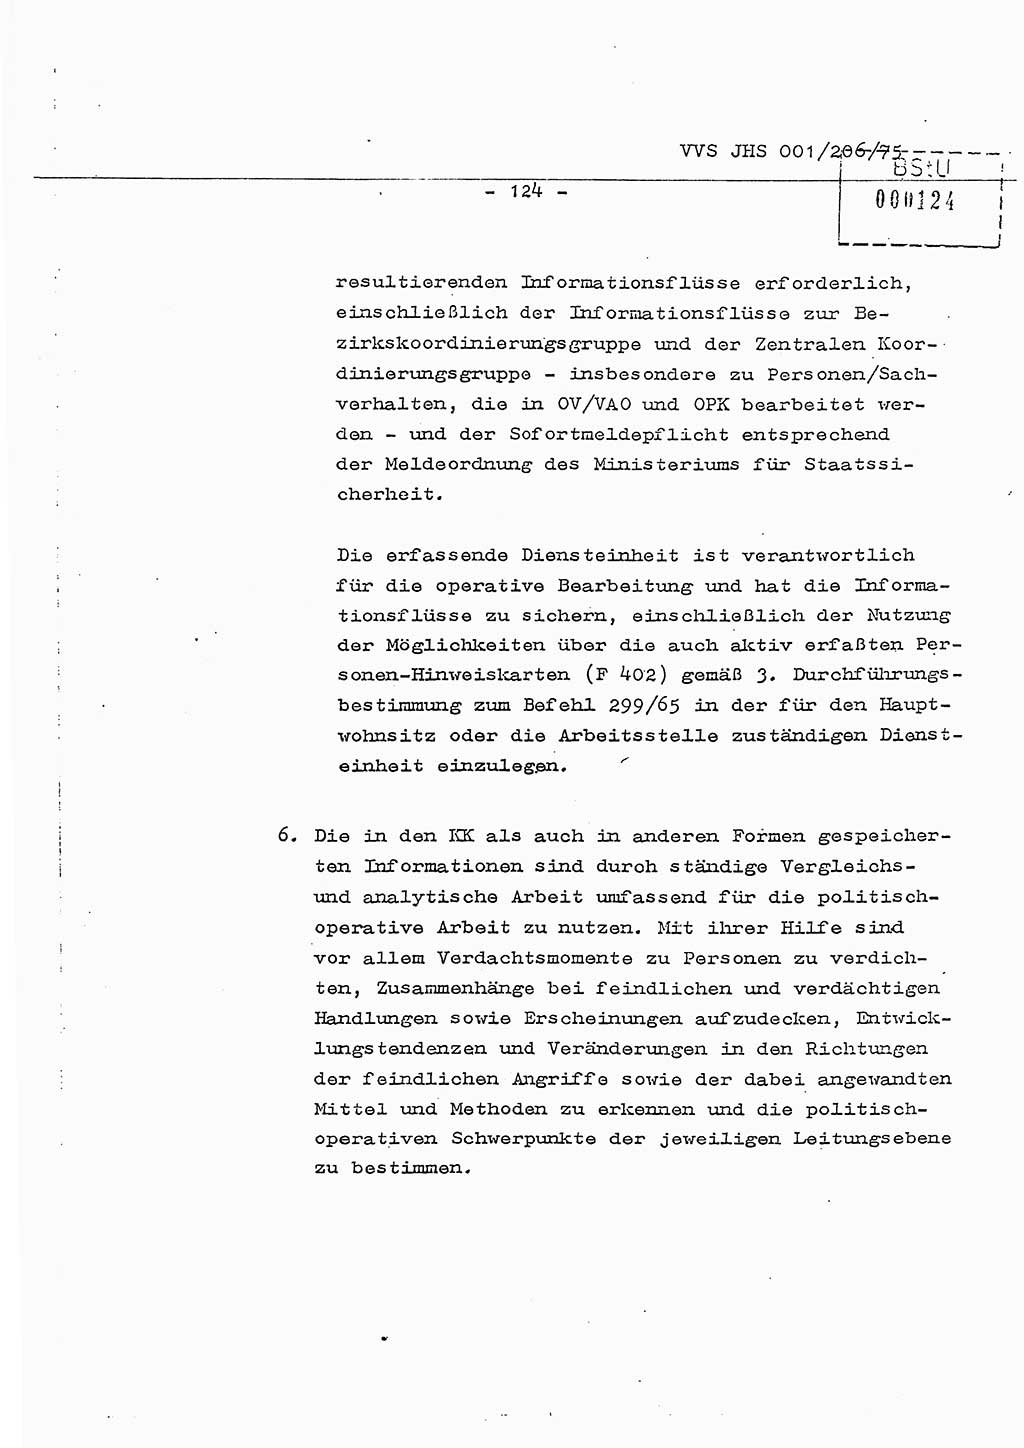 Dissertation Generalmajor Manfred Hummitzsch (Leiter der BV Leipzig), Generalmajor Heinz Fiedler (HA Ⅵ), Oberst Rolf Fister (HA Ⅸ), Ministerium für Staatssicherheit (MfS) [Deutsche Demokratische Republik (DDR)], Juristische Hochschule (JHS), Vertrauliche Verschlußsache (VVS) 001-206/75, Potsdam 1975, Seite 124 (Diss. MfS DDR JHS VVS 001-206/75 1975, S. 124)